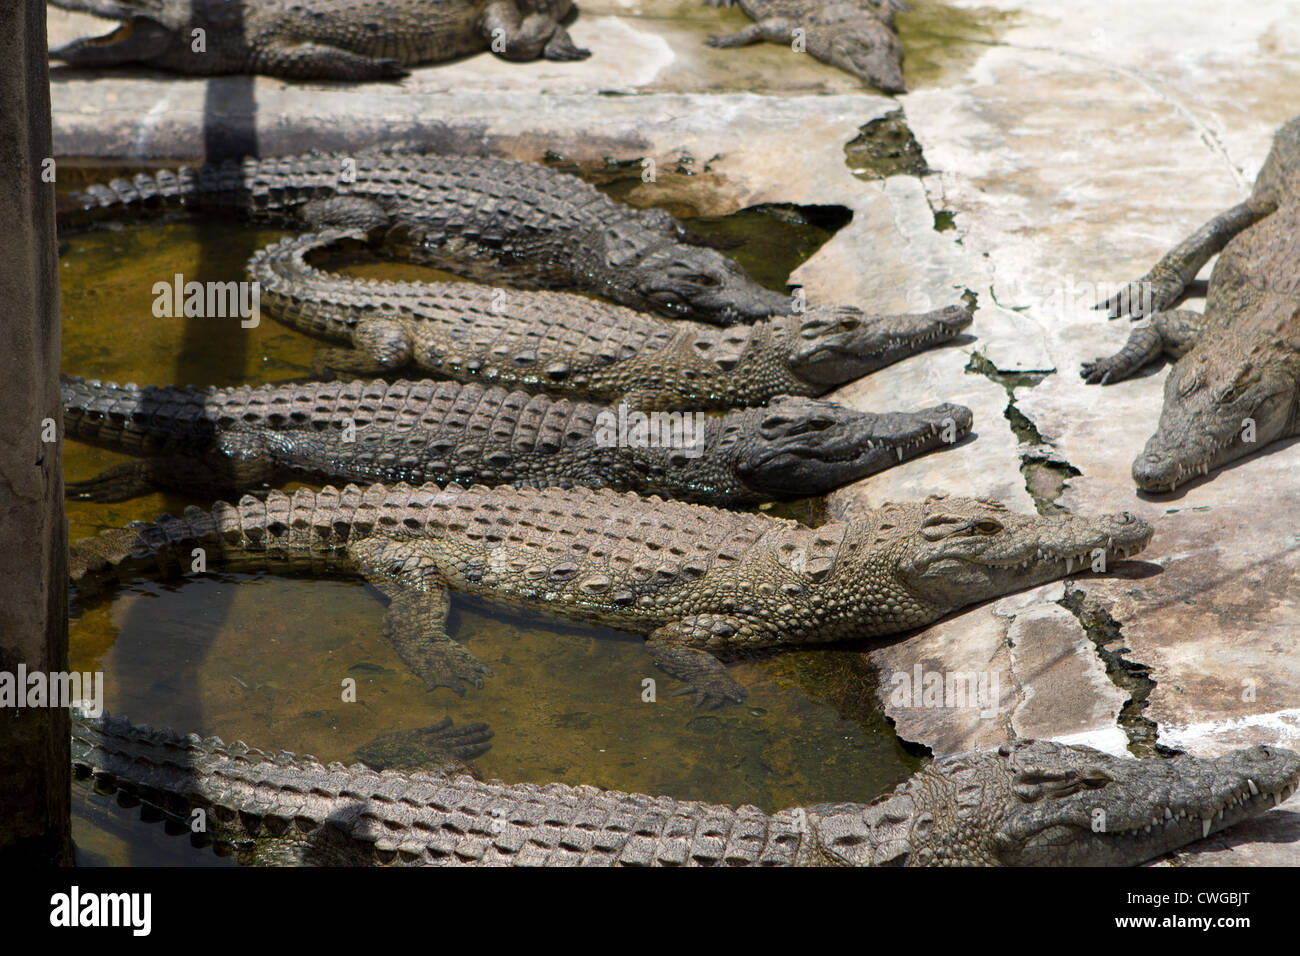 Coccodrillo del Nilo (Crocodylus niloticus) nella fattoria di coccodrilli, Bagamoyo, Tanzania Foto Stock